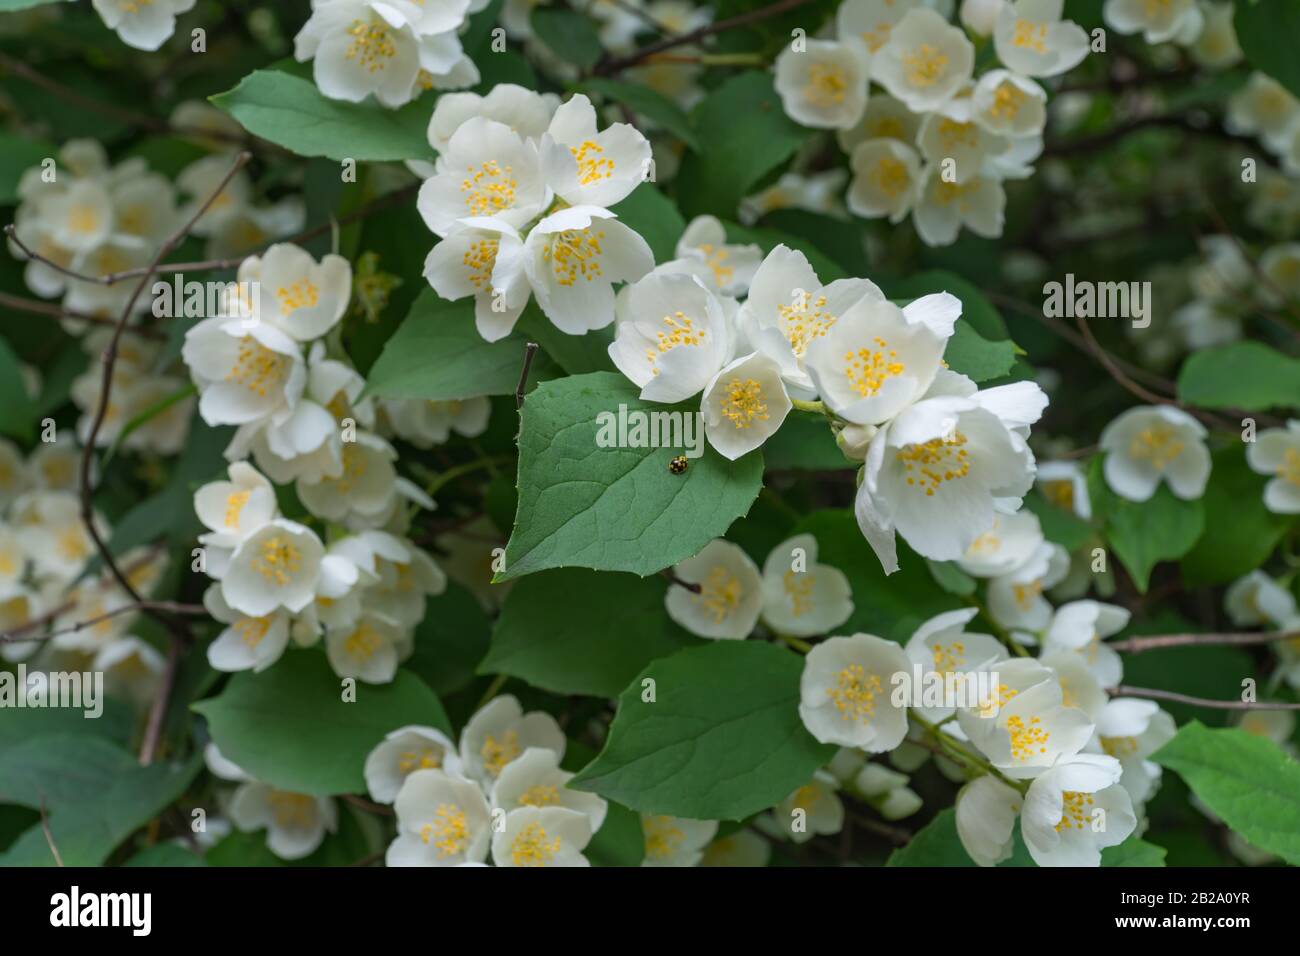 Simulazione Di Fiori D'Arancio. Bellissimo arbusto in fiore. Estate Foto Stock